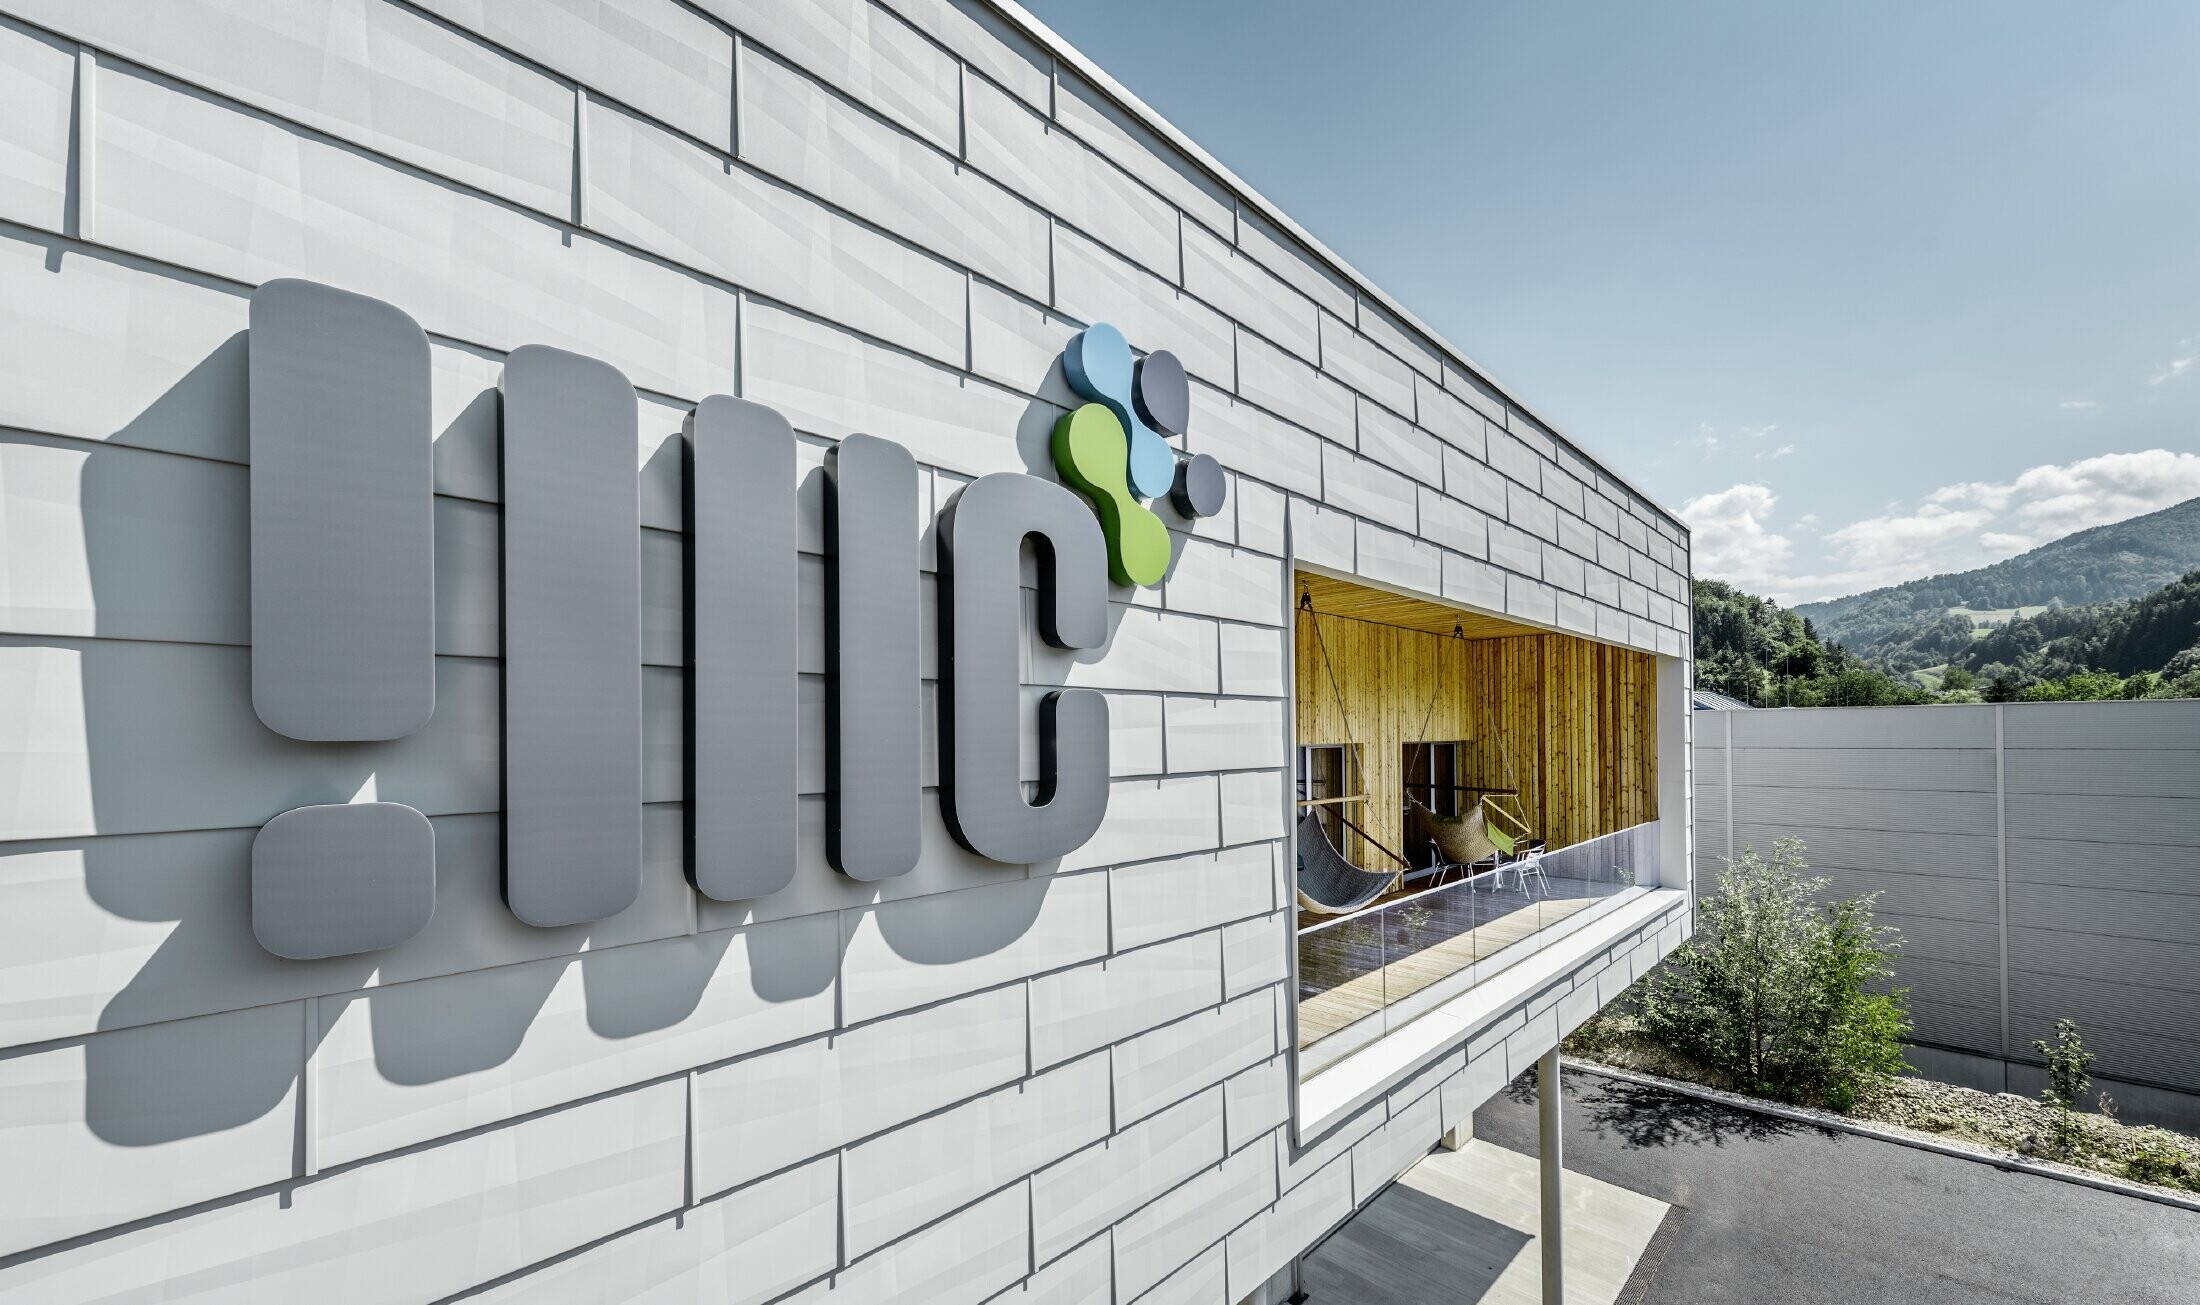 Sjedište poduzeća IT Management GmbH u Ybbsitzu s aluminijskom fasadom tvrtke PREFA; Fasada je obložena fasadnim panelom FX.12 u prefa bijeloj, na njoj se nalazi logotip tvrtke.